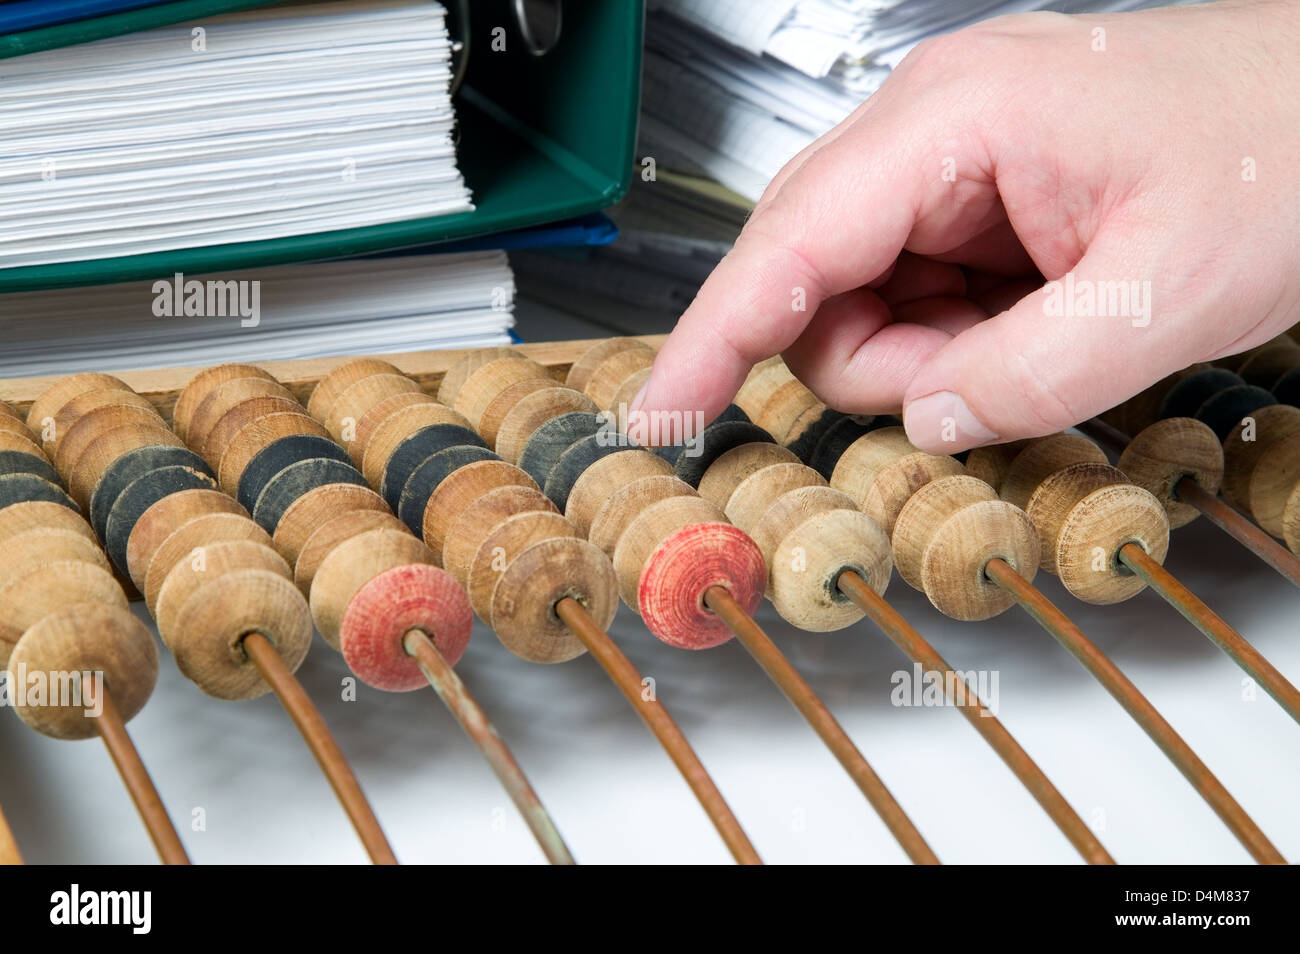 Vieille calculatrice mathématique abacus avec bande de documents Banque D'Images